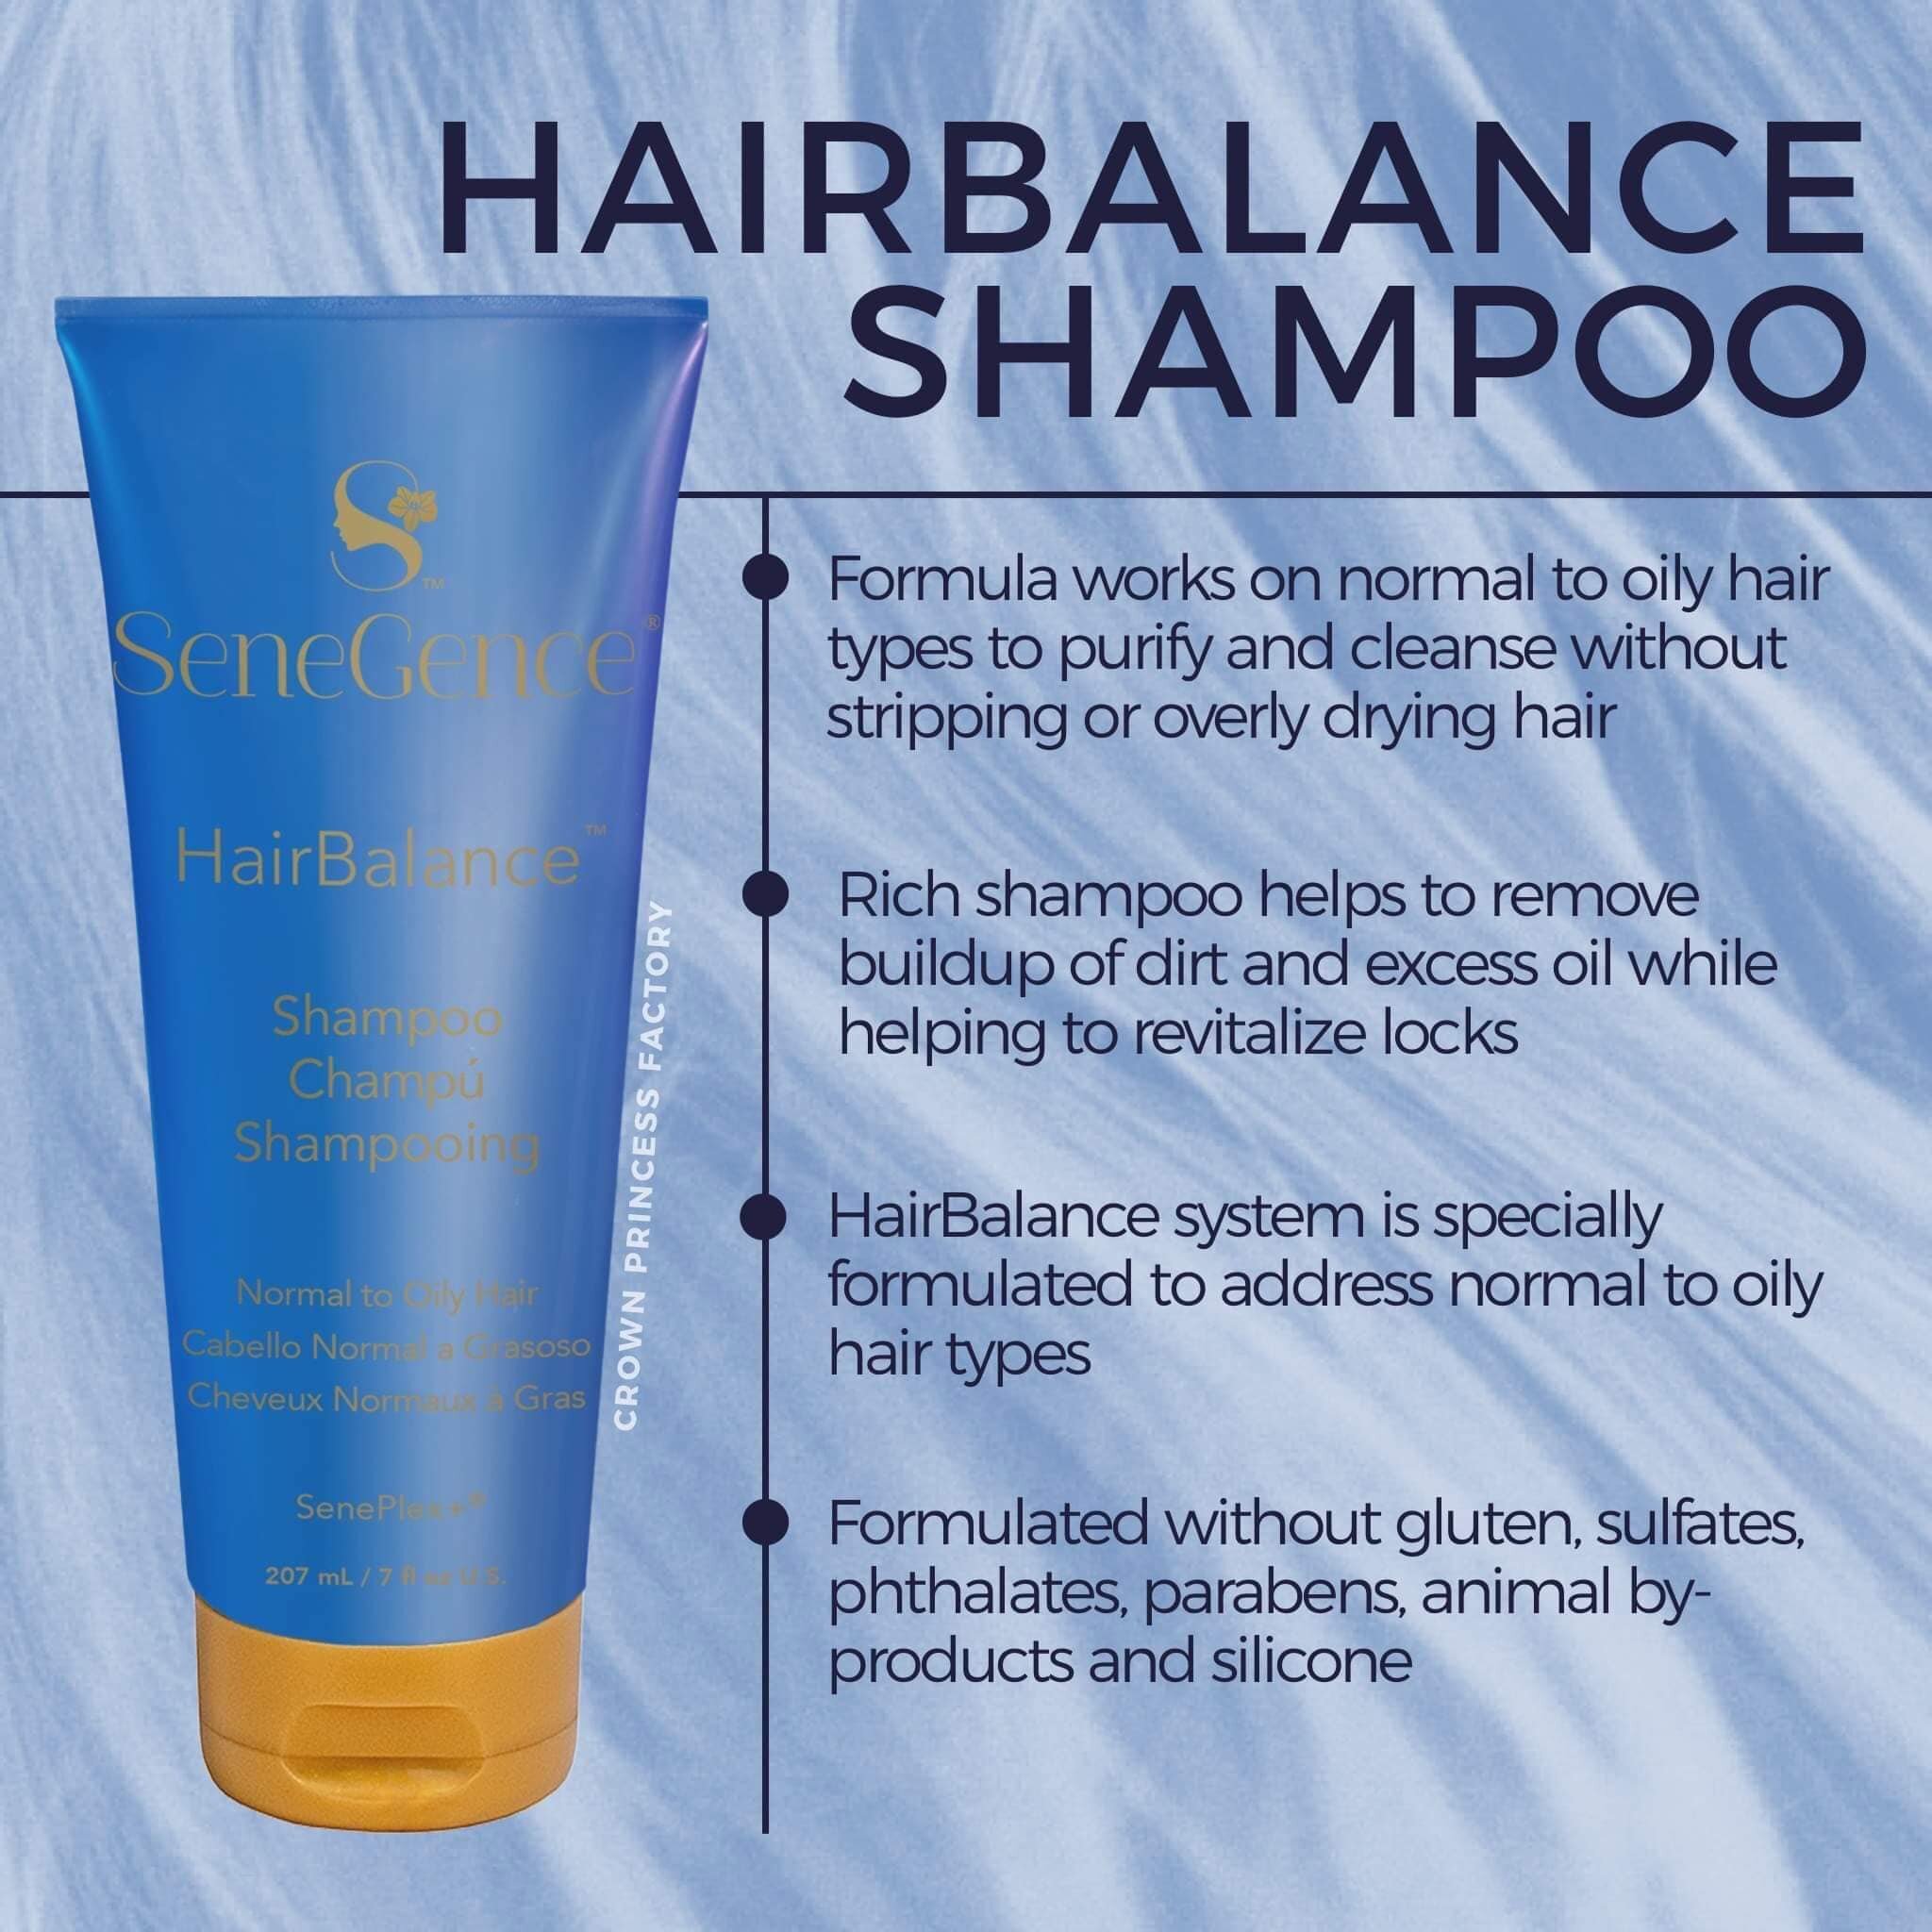 Hairbalance Shampoo by Senegence.jpg